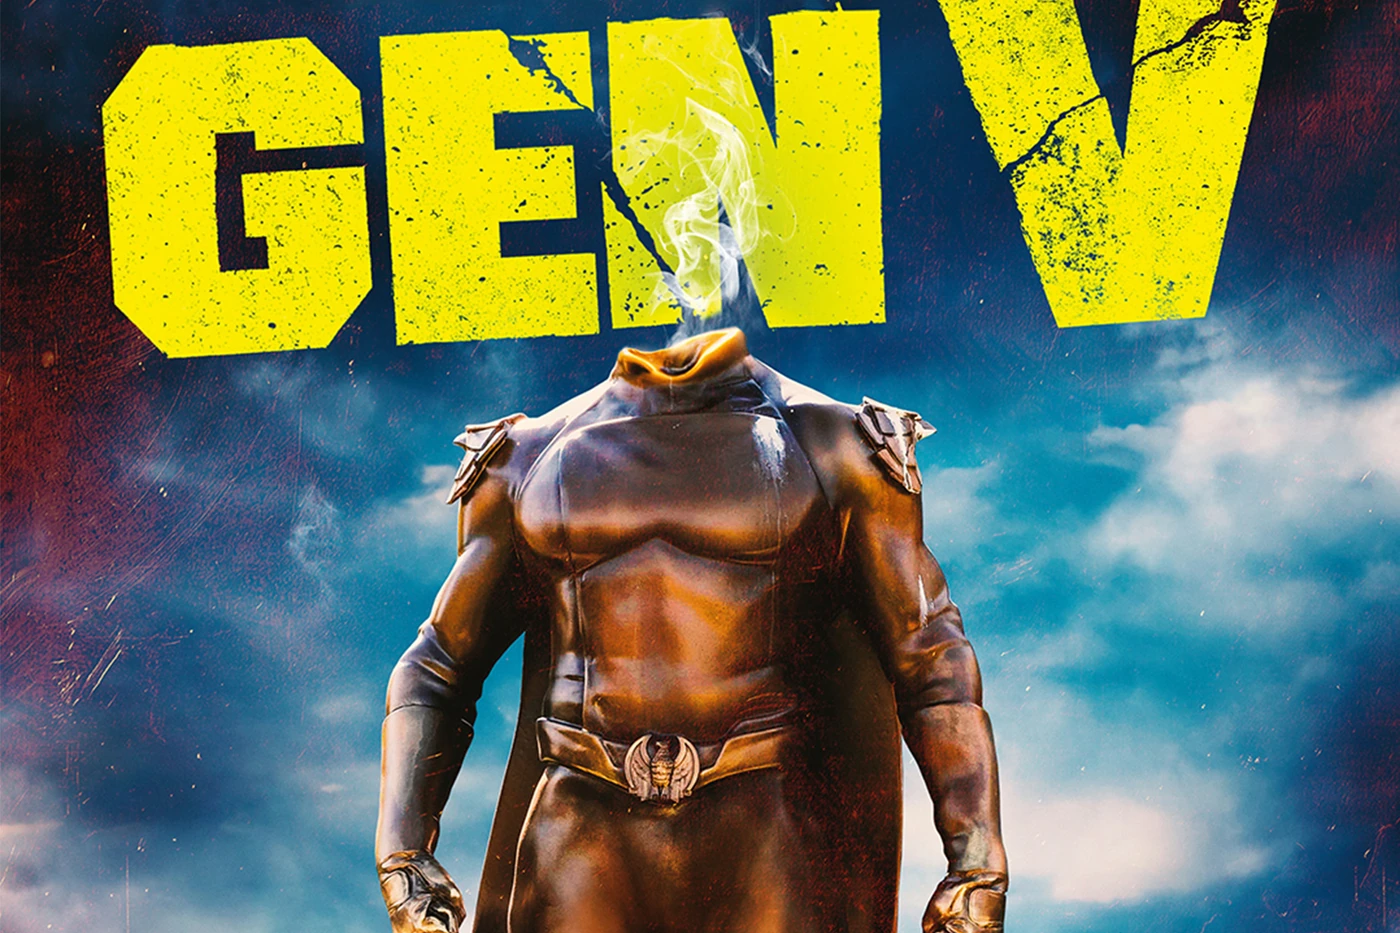 《黑袍纠察队》备受期待的衍生剧《Gen V》公开全新宣传海报